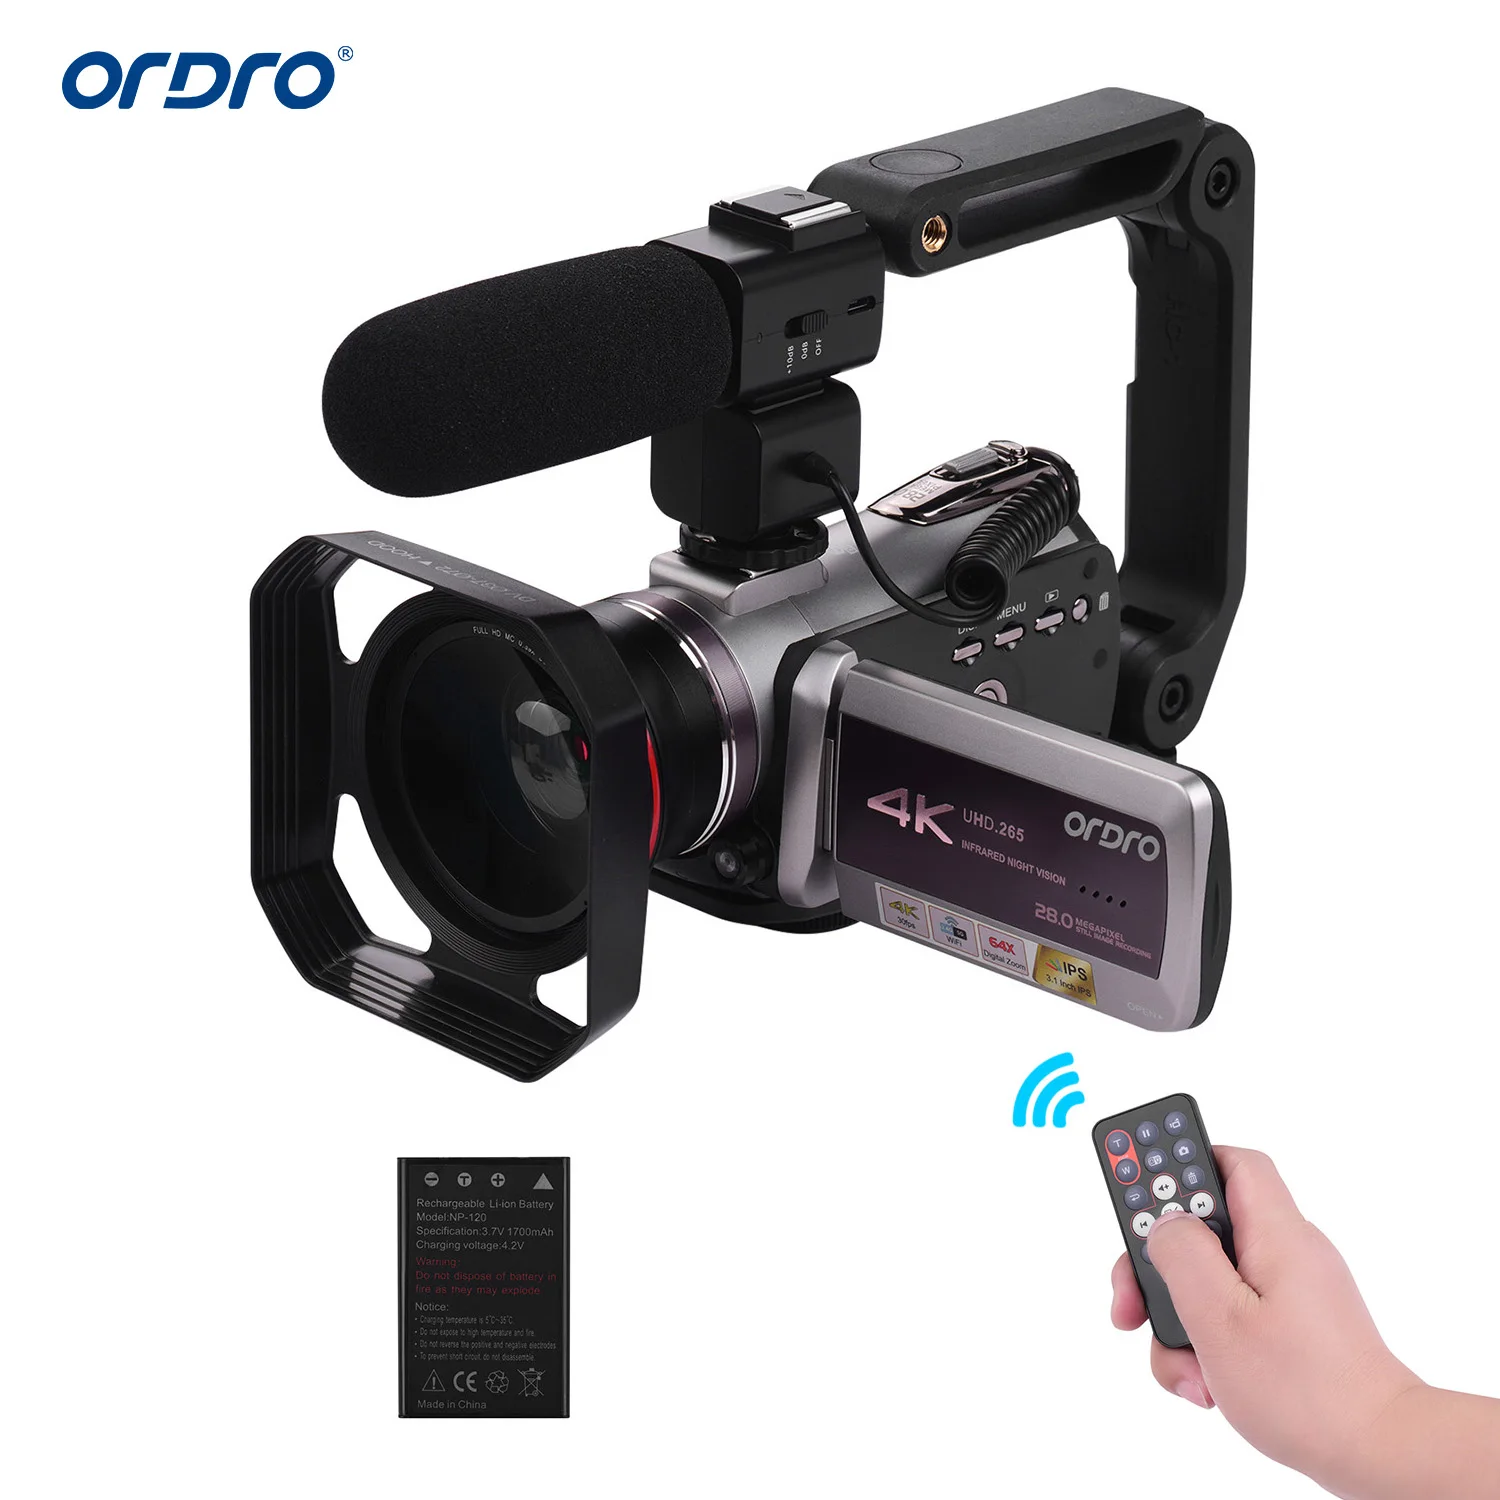 

ORDRO HDV-AZ50 Портативный реальные в формате 4K UHD, 30FPS цифровая камера с Wi-Fi для видео Камера видеокамера 3,1 дюймов IPS сенсорного экрана 64X цифровая ...